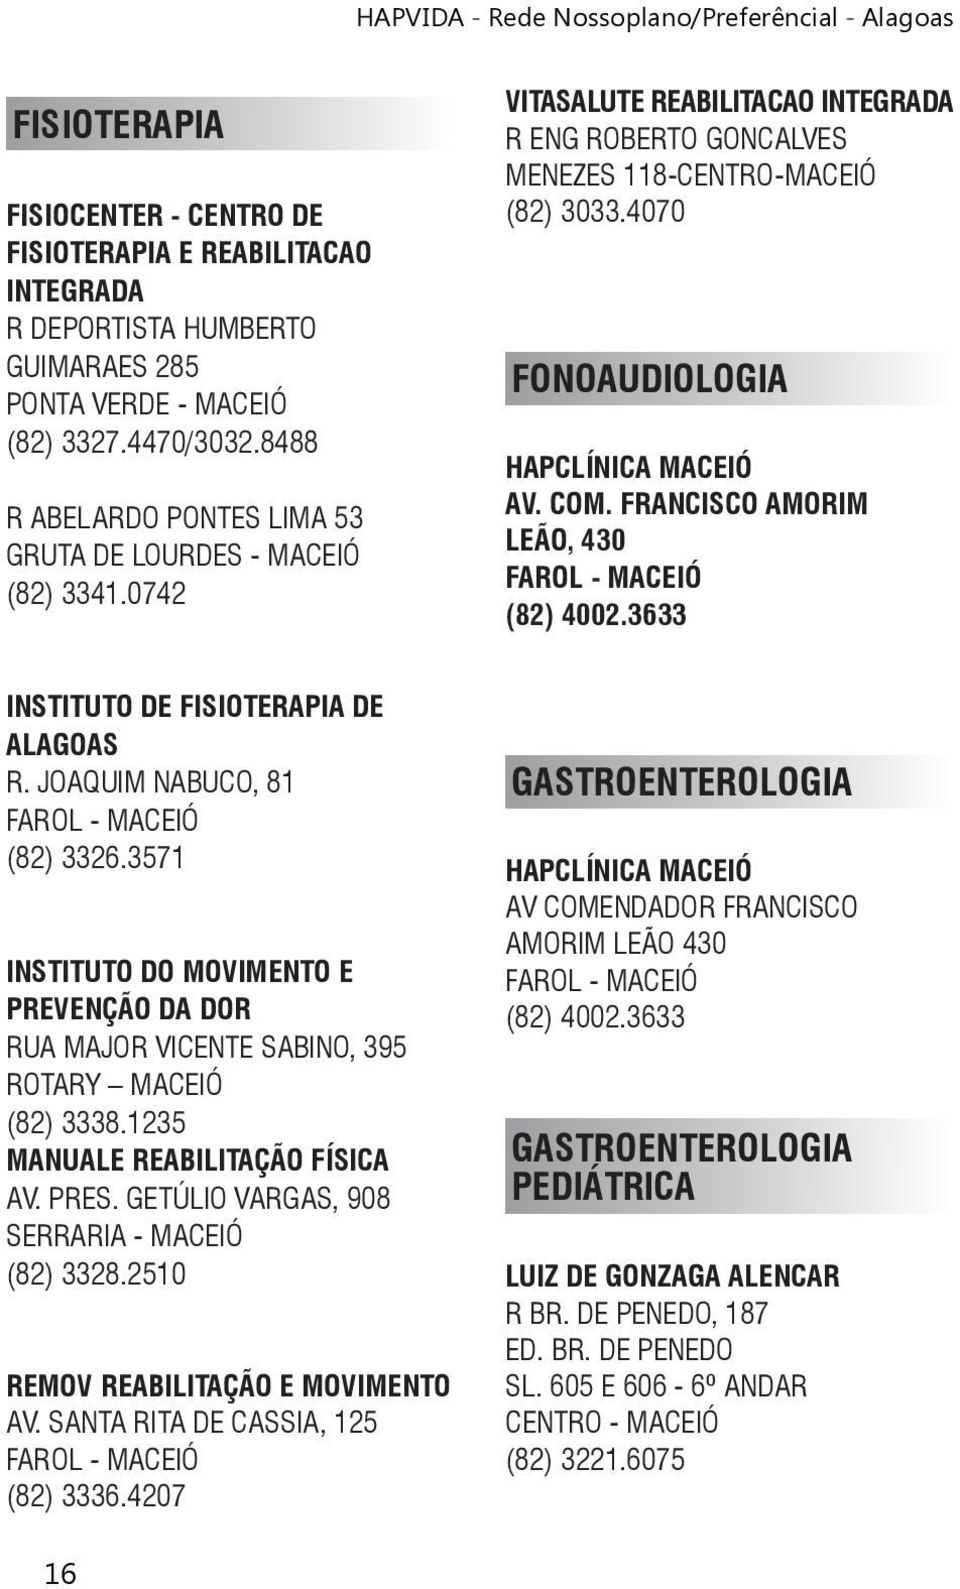 4070 FONOAUDIOLOGIA HAPCLÍNICA MACEIÓ AV. COM. FRANCISCO AMORIM LEÃO, 430 (82) 4002.3633 INSTITUTO DE FISIOTERAPIA DE ALAGOAS R. JOAQUIM NABUCO, 81 (82) 3326.